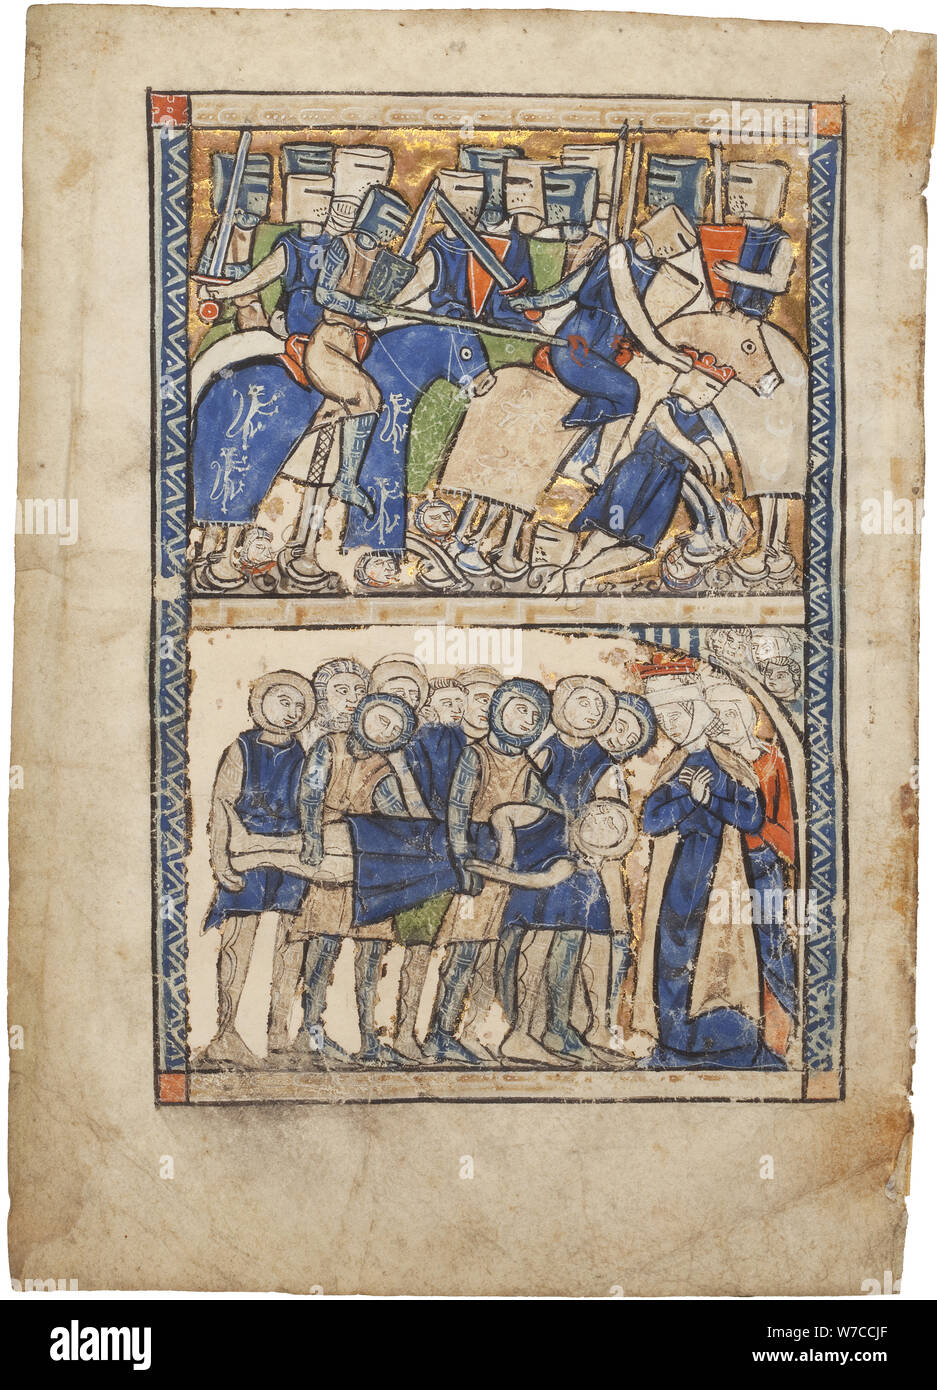 Ilustración de Le Roman de Troie (El romance de Troya) por Benoît de Sainte-Maure. Foto de stock